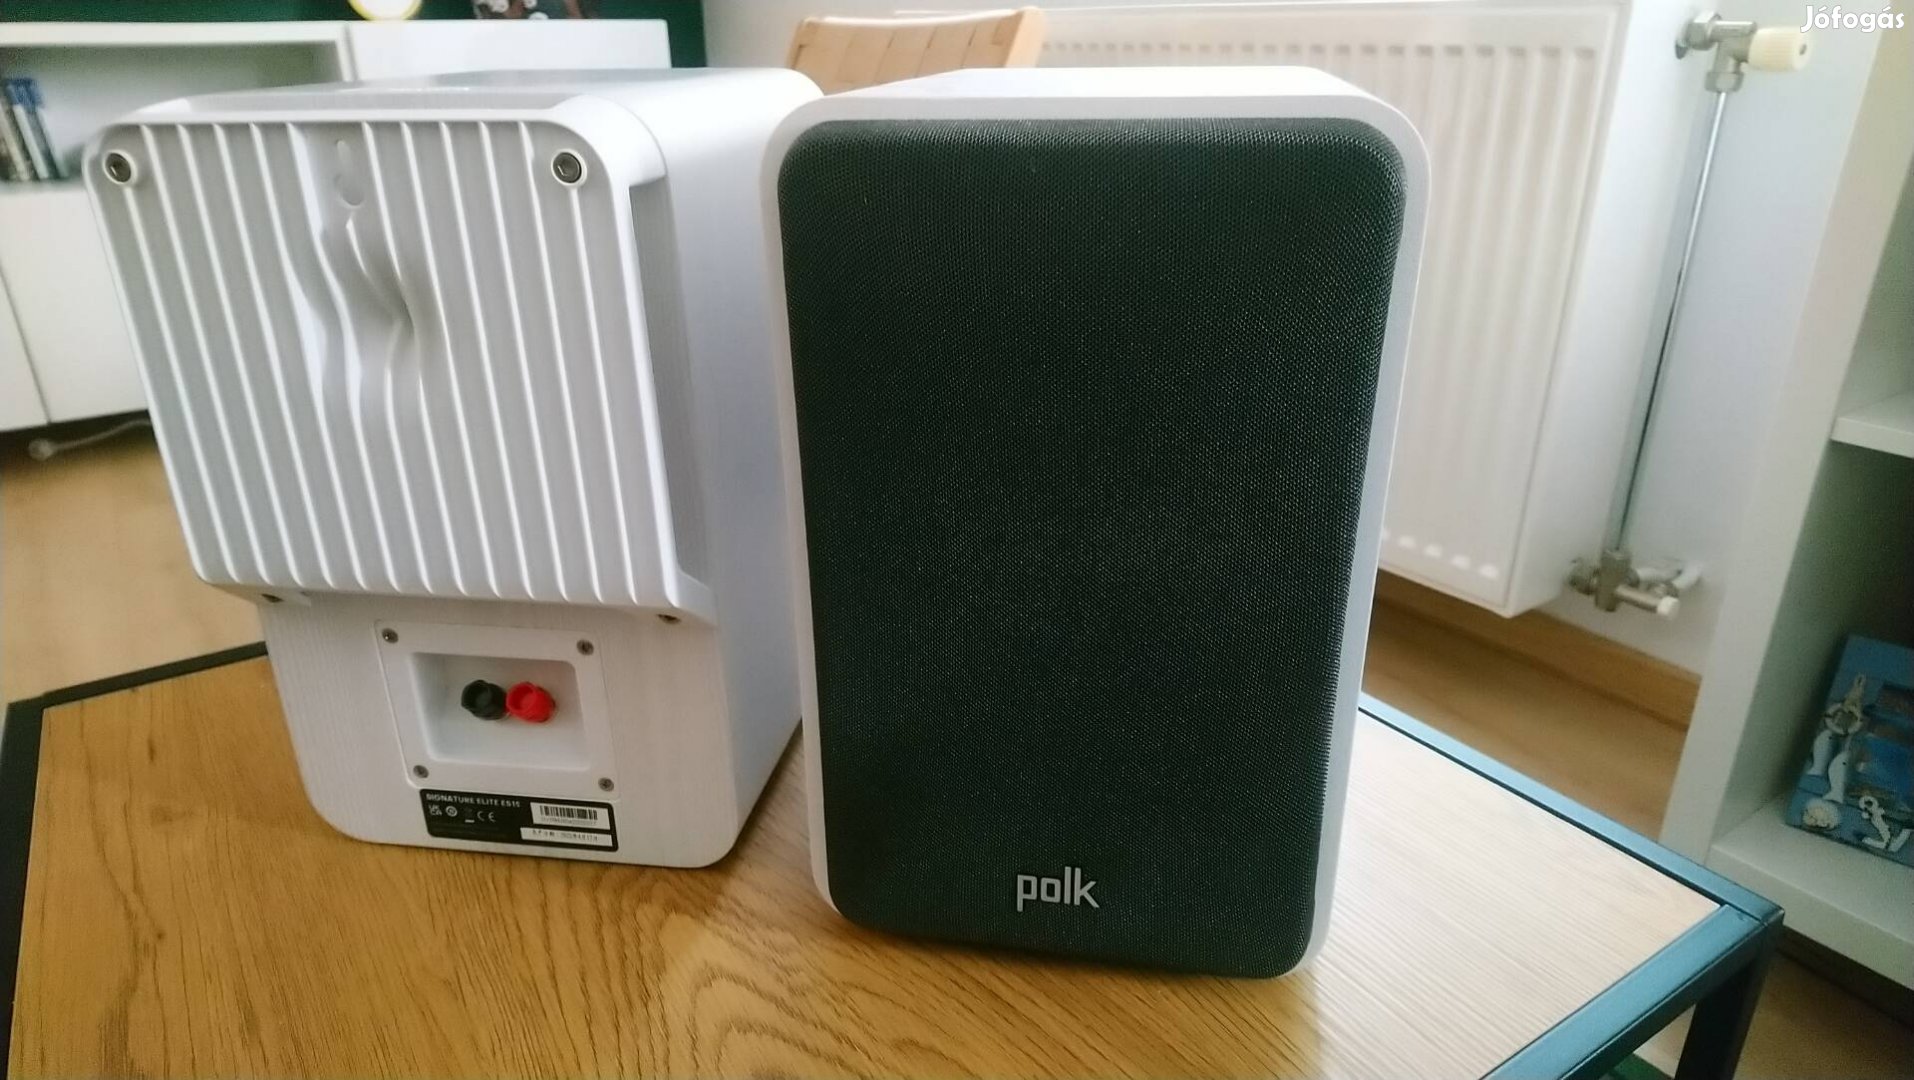 Polk audio Es15 hangfal pár egy éves